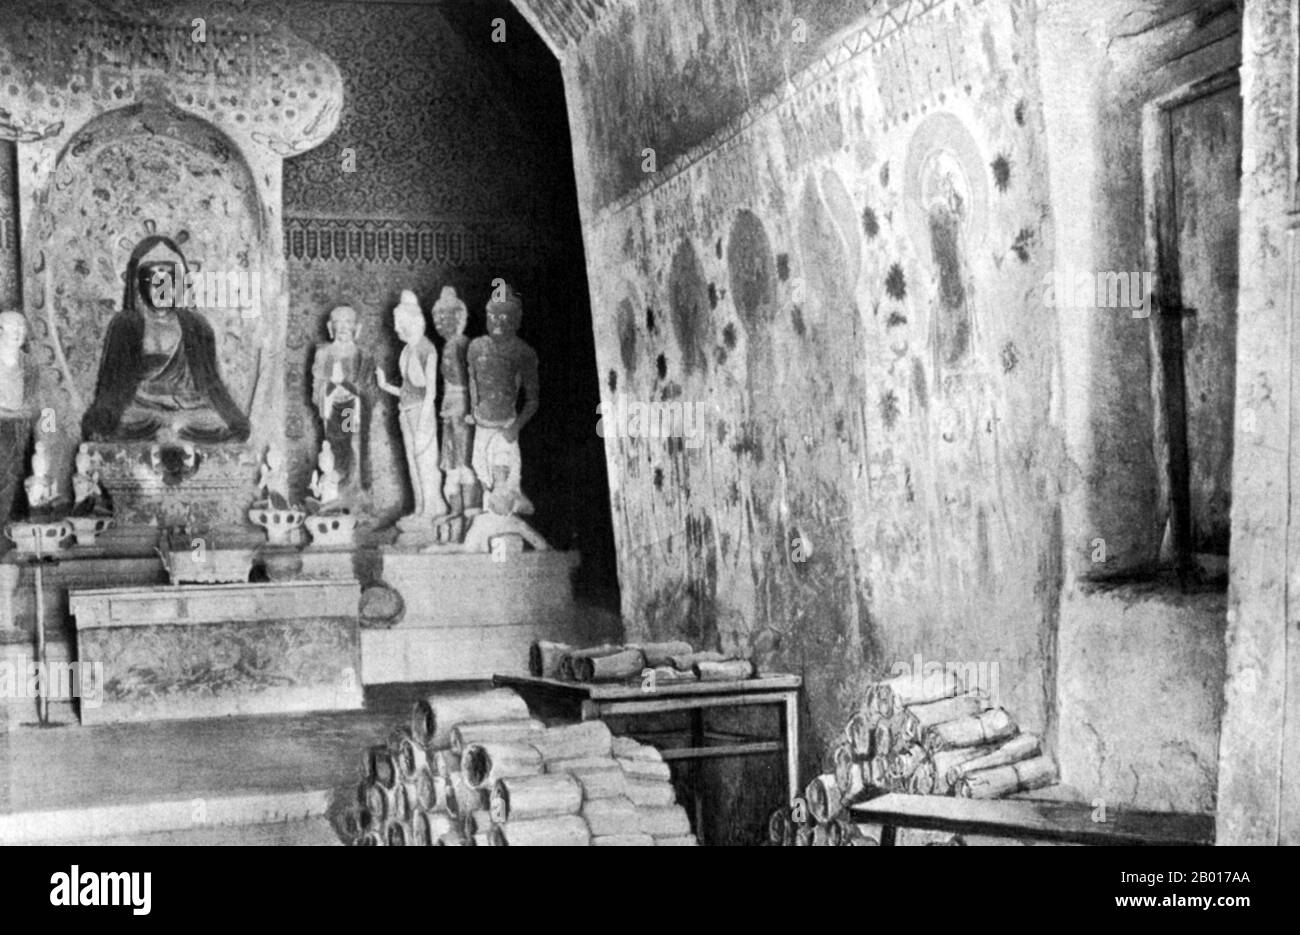 Chine : documents de Cave 17, Mogao, empilés pour examen par Sir Aurel Stein.Dunhuang, 1908.Au début de 1900s, un Daoïste chinois, Wang Yuanlu, s'est nommé gardien de certaines des grottes de Mogao.Wang a découvert une zone fortifiée derrière un côté d'un couloir menant à une grotte principale.Derrière le mur se trouvait une petite grotte bourrée d'un énorme panier de manuscrits datant de 406 à 1002 ce.Il s'agit notamment de vieux rouleaux de papier de chanvre en chinois et dans de nombreuses autres langues, de peintures sur le chanvre, la soie ou le papier, de nombreuses figurines endommagées de Bouddhas, et d'autres paraphhernalia bouddhistes. Banque D'Images